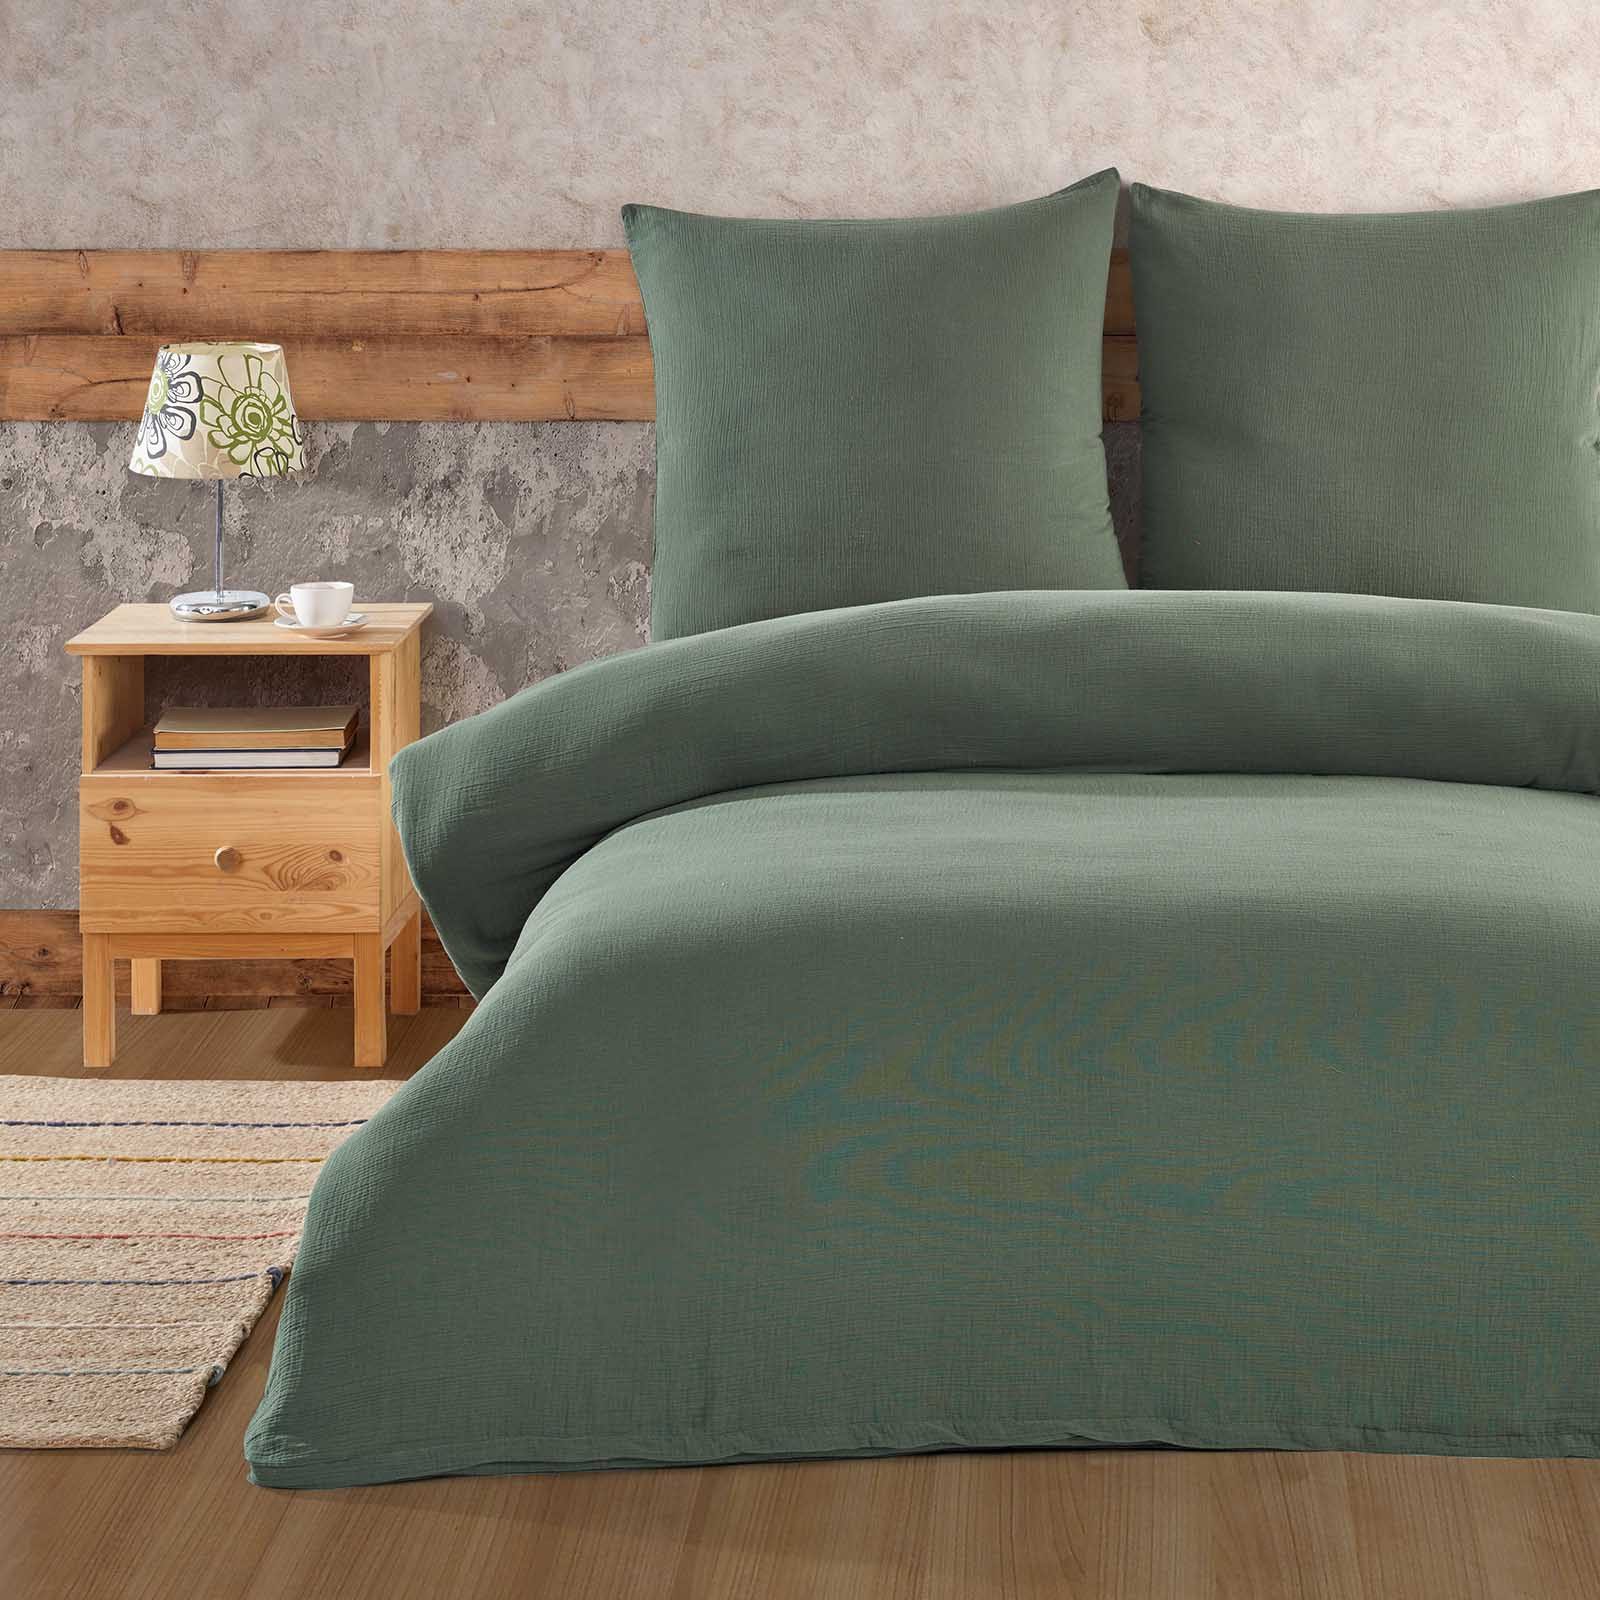 Bettwäsche Luxury, Buymax, Musselin 100% Baumwolle, 3 teilig, 200x200 cm, Bettbezug Set, Uni einfarbig, mit Reißverschluss, Grün